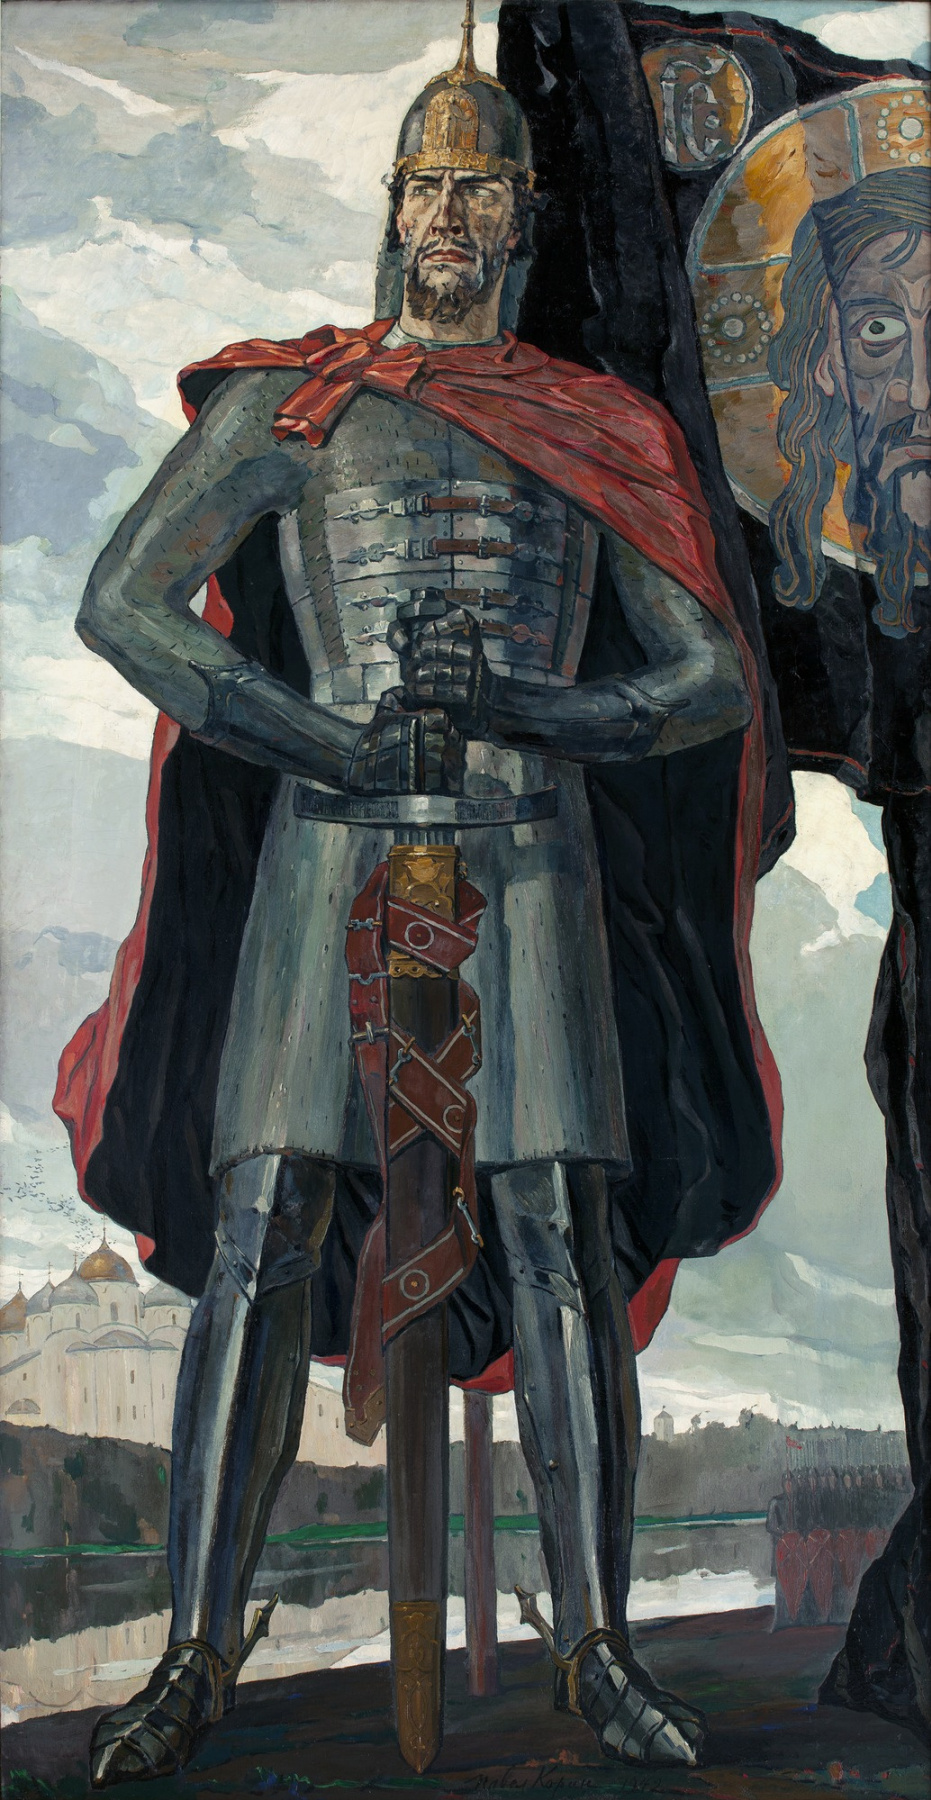 Pavel Dmitrievich Korin. Alexander Nevsky. The Central part of the triptych "Alexander Nevsky"